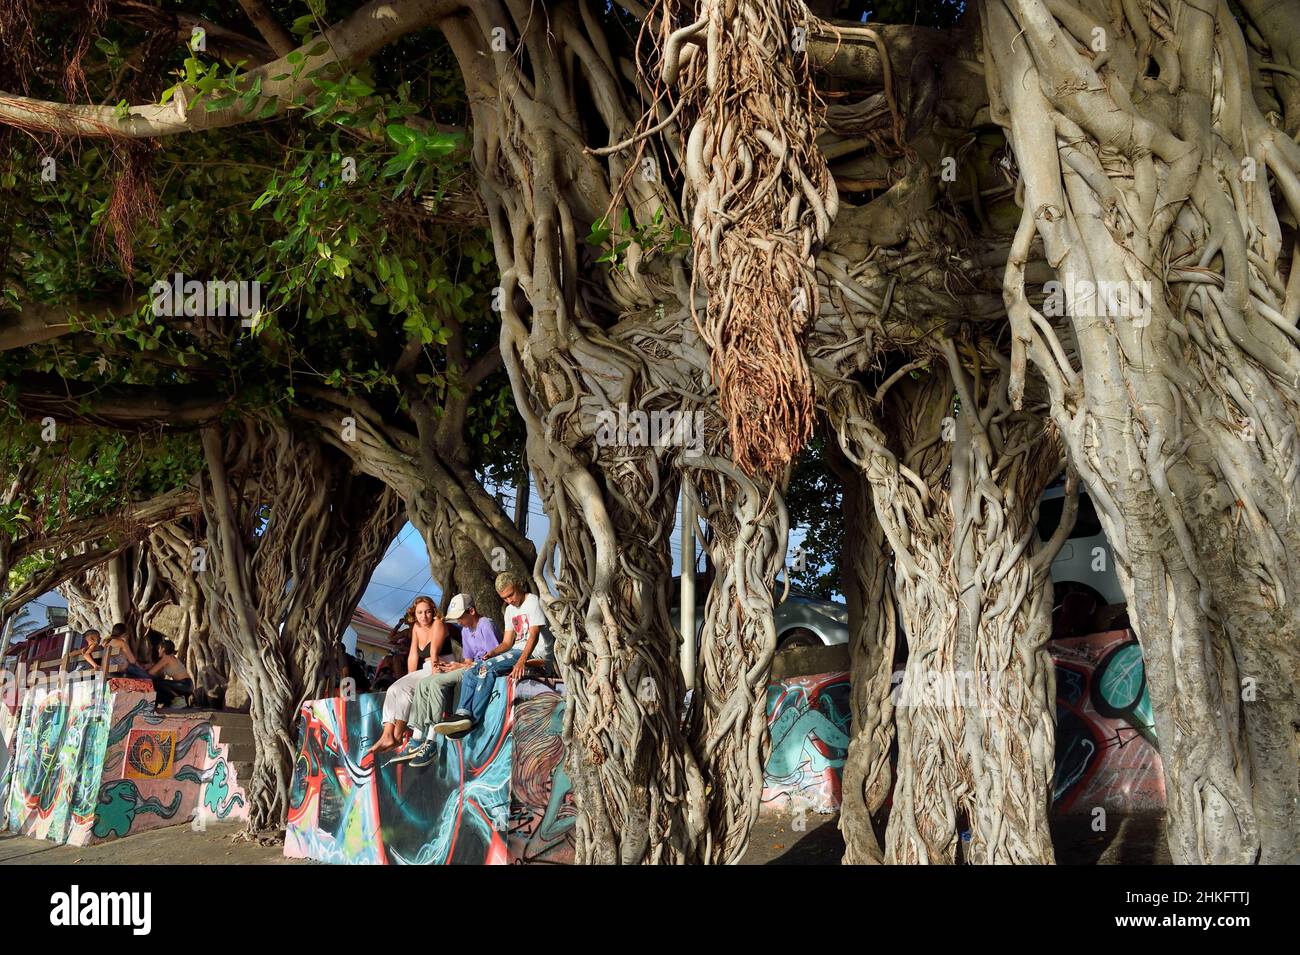 Francia, isola della riunione (dipartimento francese d'oltremare), Saint Pierre, Terre Sainte area, gruppo di adolescenti che chiacchierano sotto il fico banyan o indiano banyan (Ficus benghalensis) Foto Stock